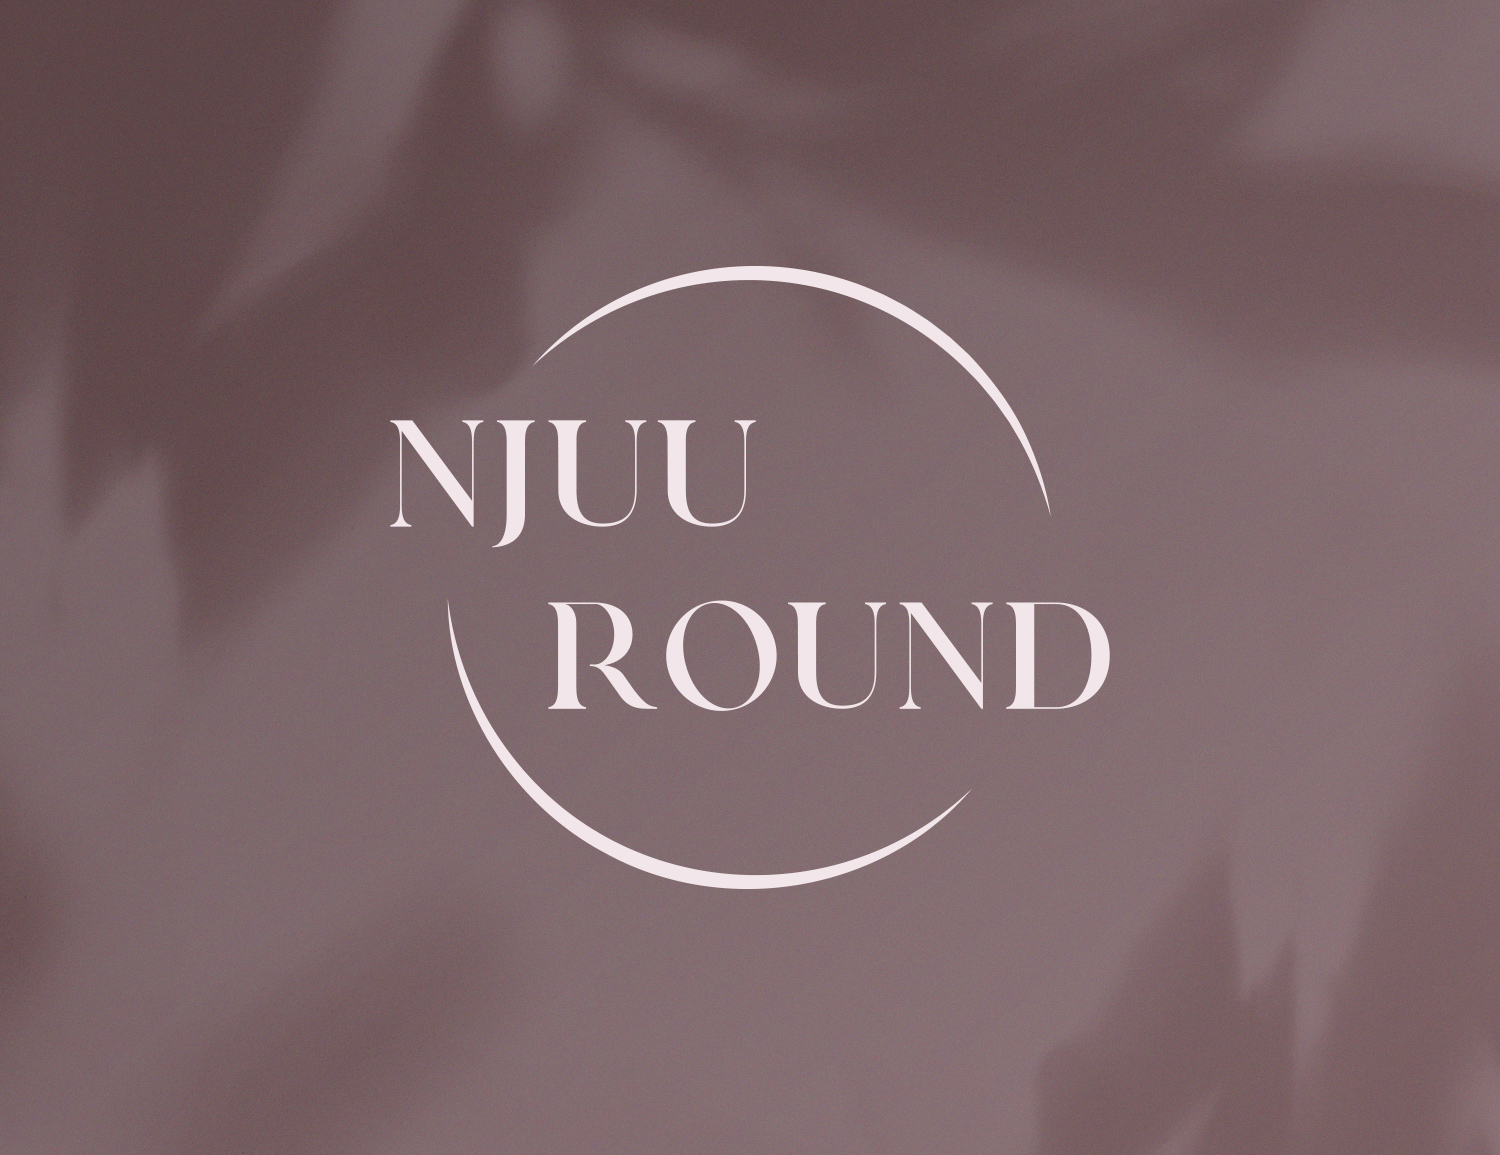 Branding for Njuu Round